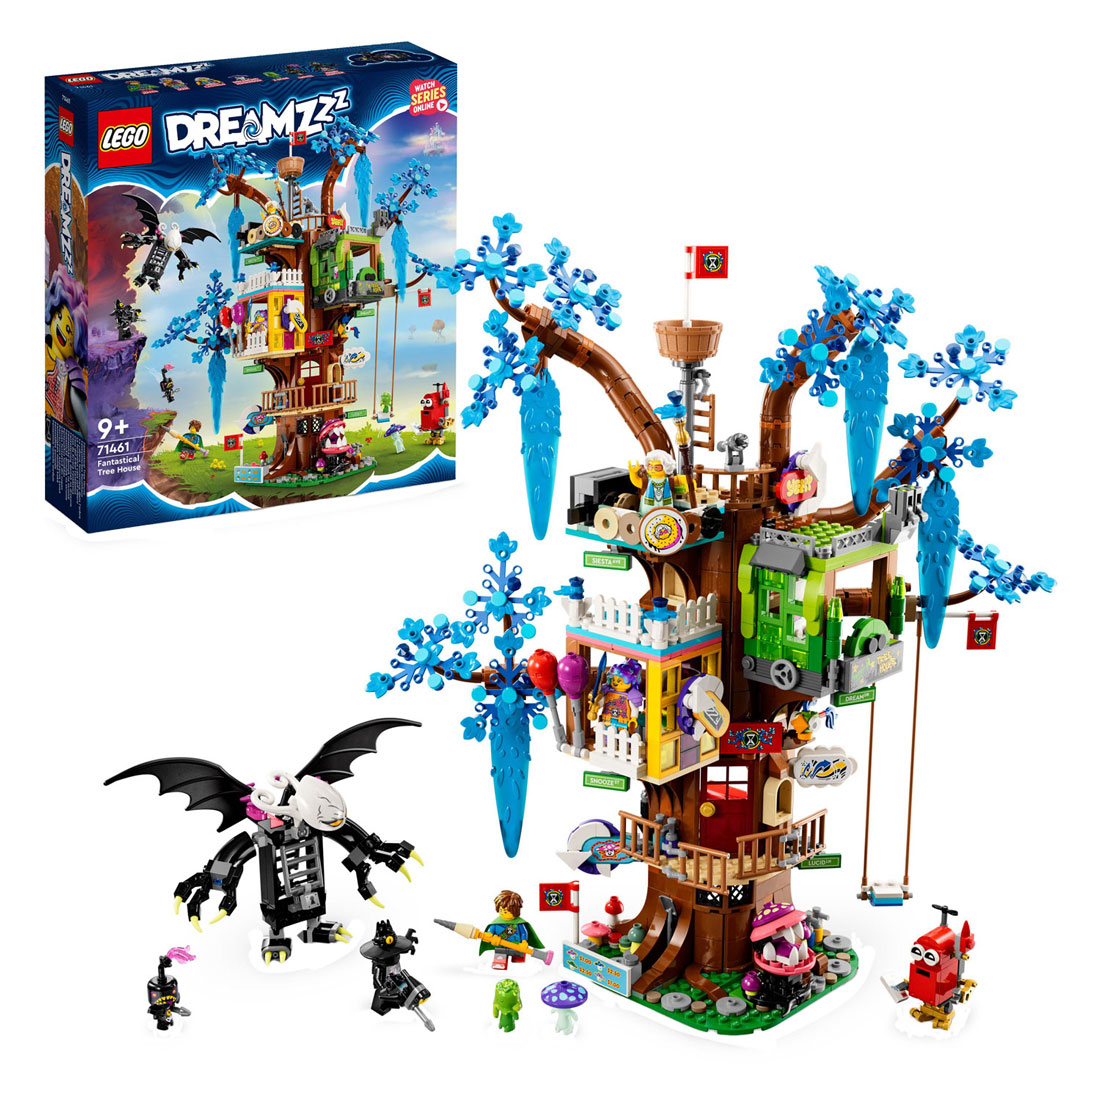 71461 LEGO DREAMZzz Fantastisches Baumhaus